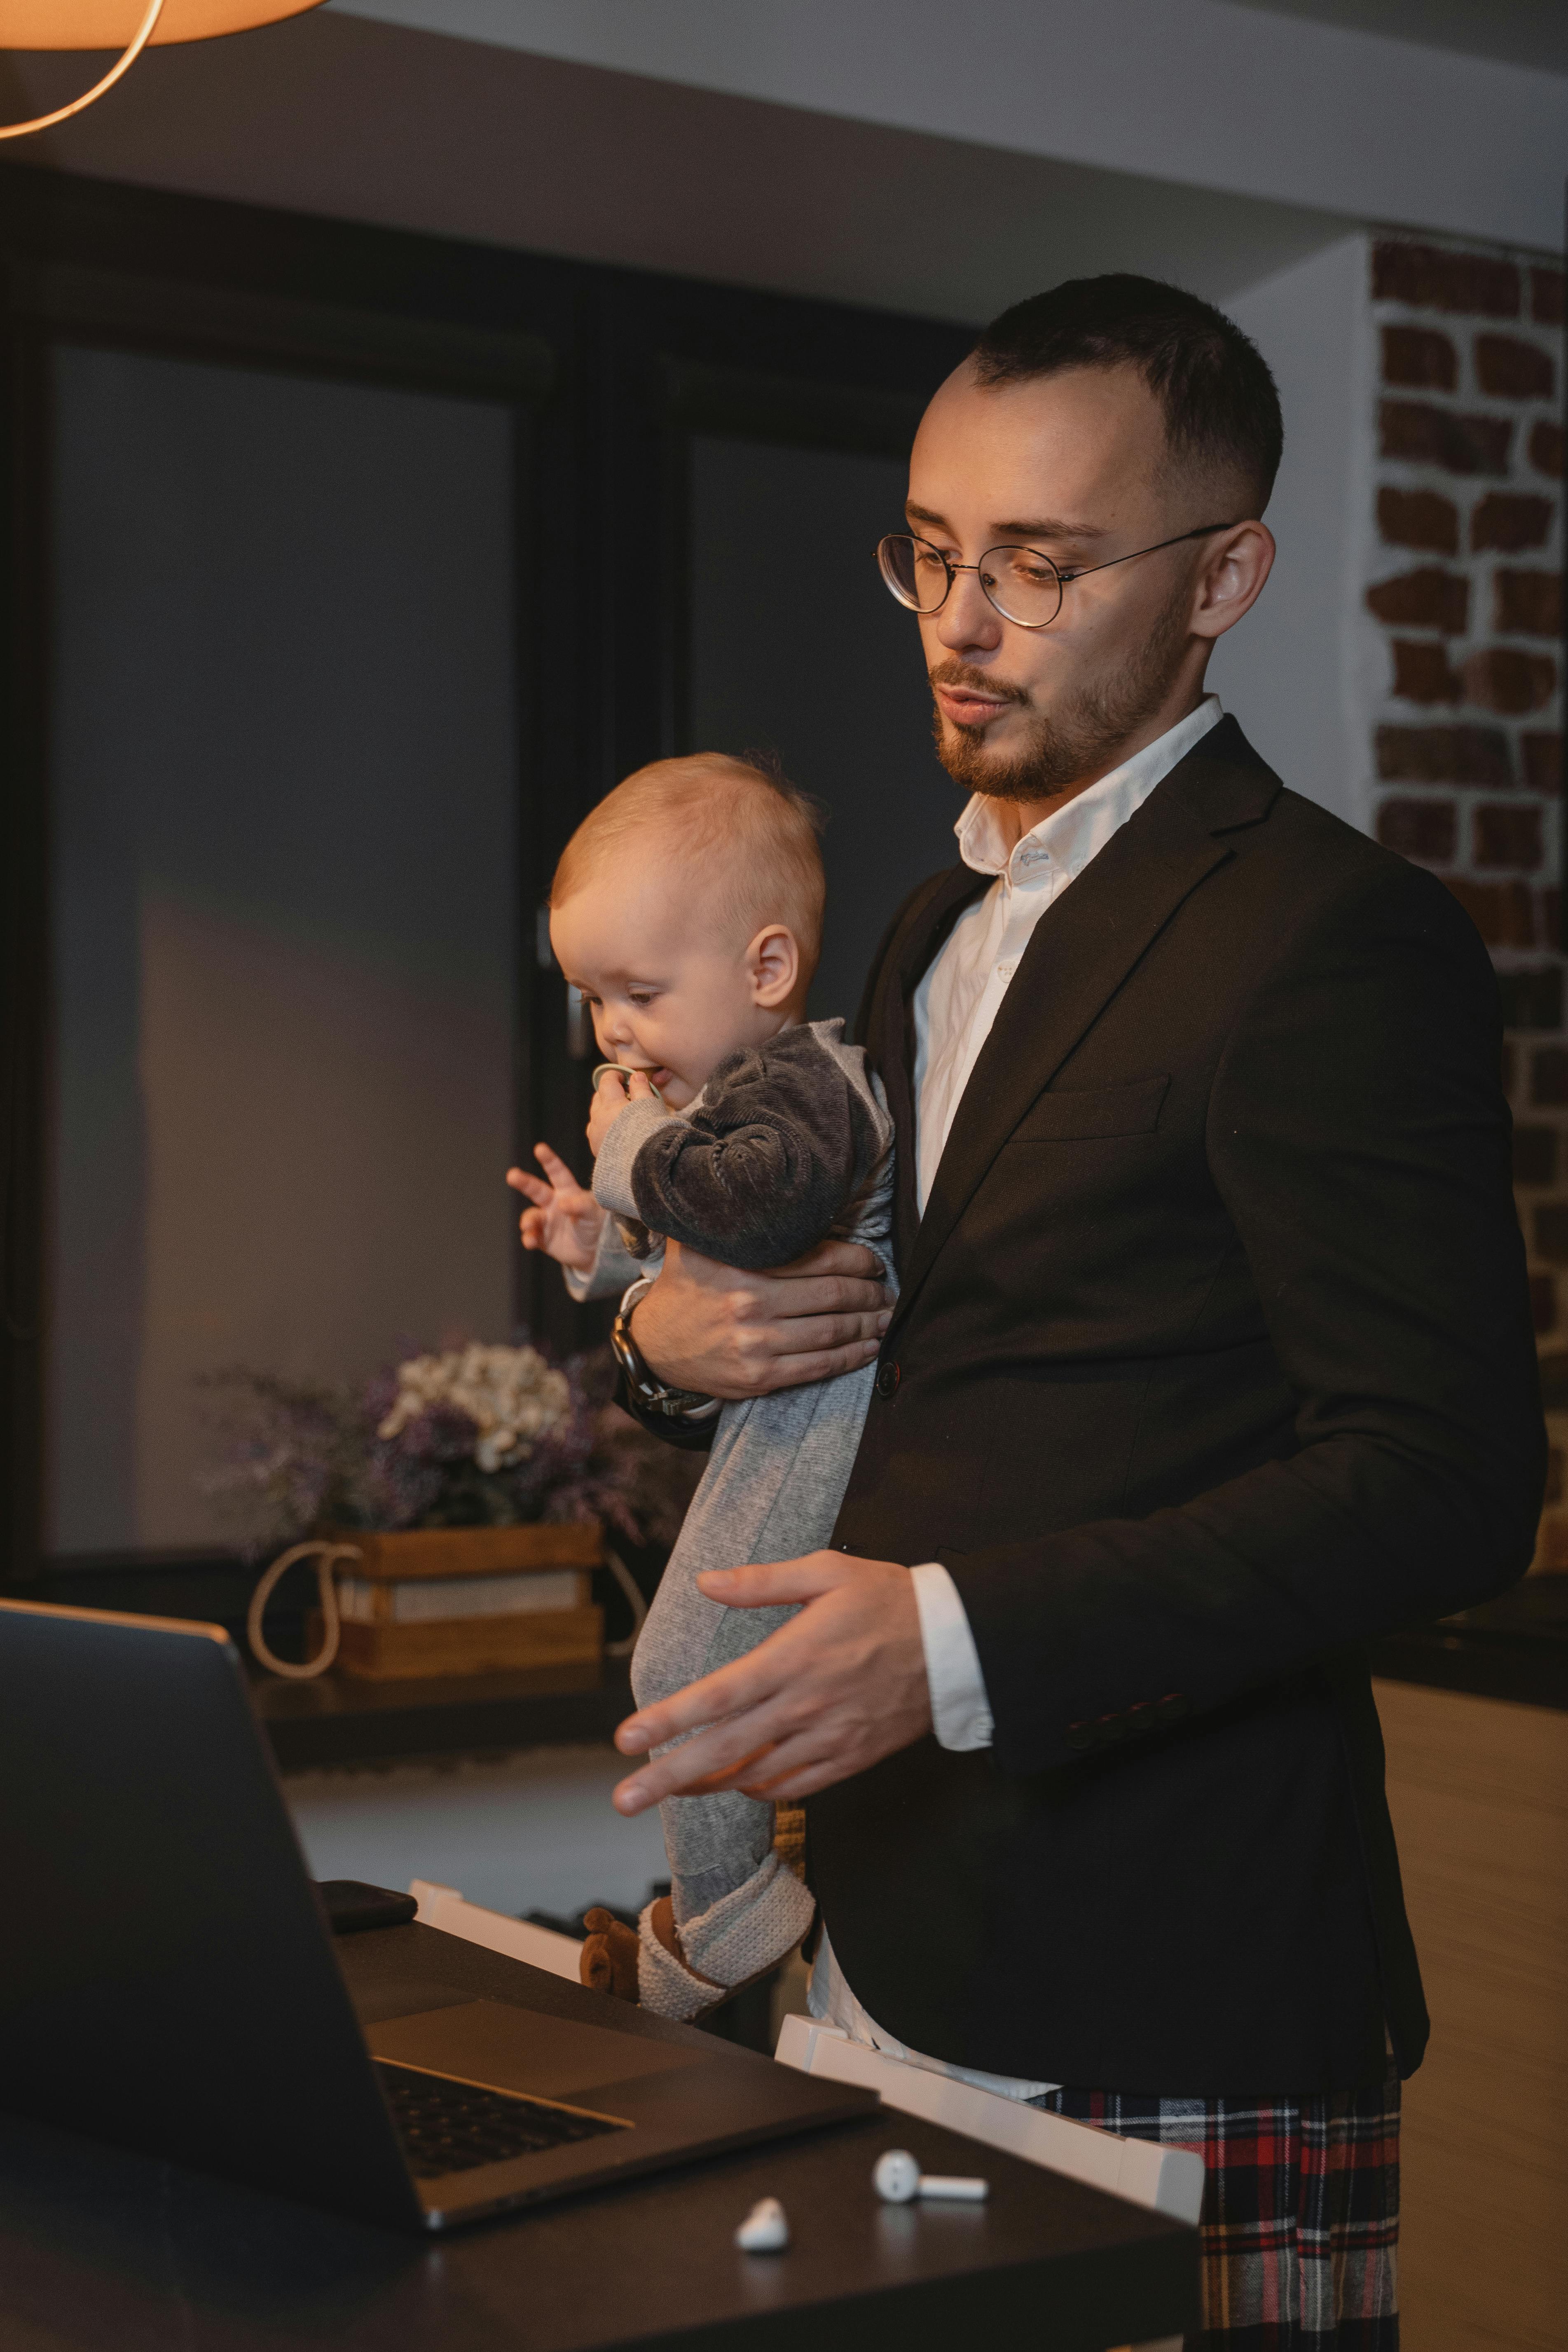 Ein Vater trägt ein Baby, während er an seinem Laptop sitzt | Quelle: Pexels